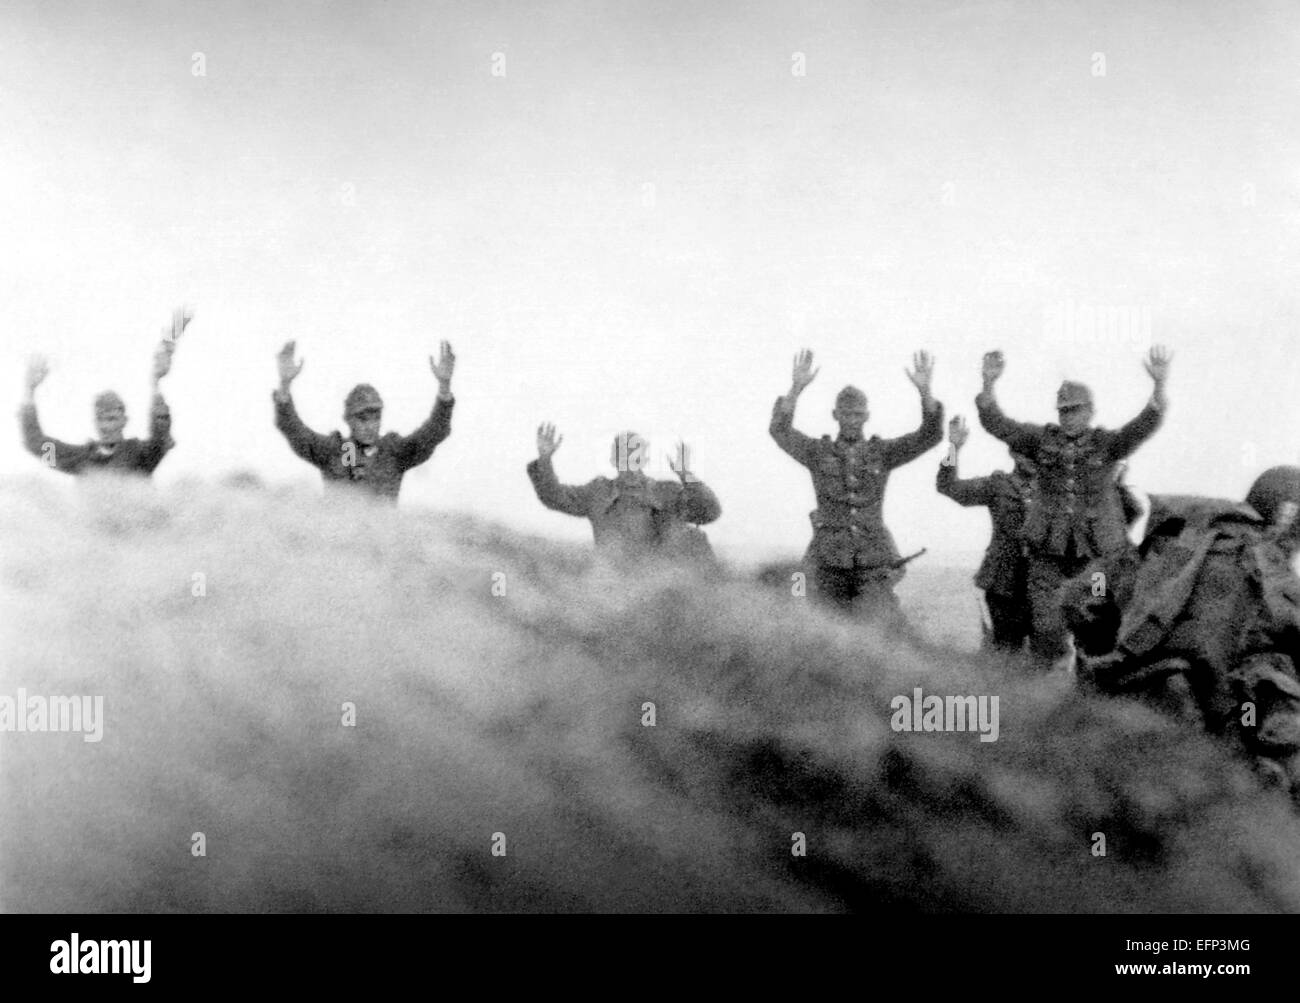 Les soldats allemands mettent leurs mains en l'air en abandon de troupes alliées durant la bataille de Normandie le 9 juin 1944 dans le secteur de Taret Ravenoville, France. Banque D'Images